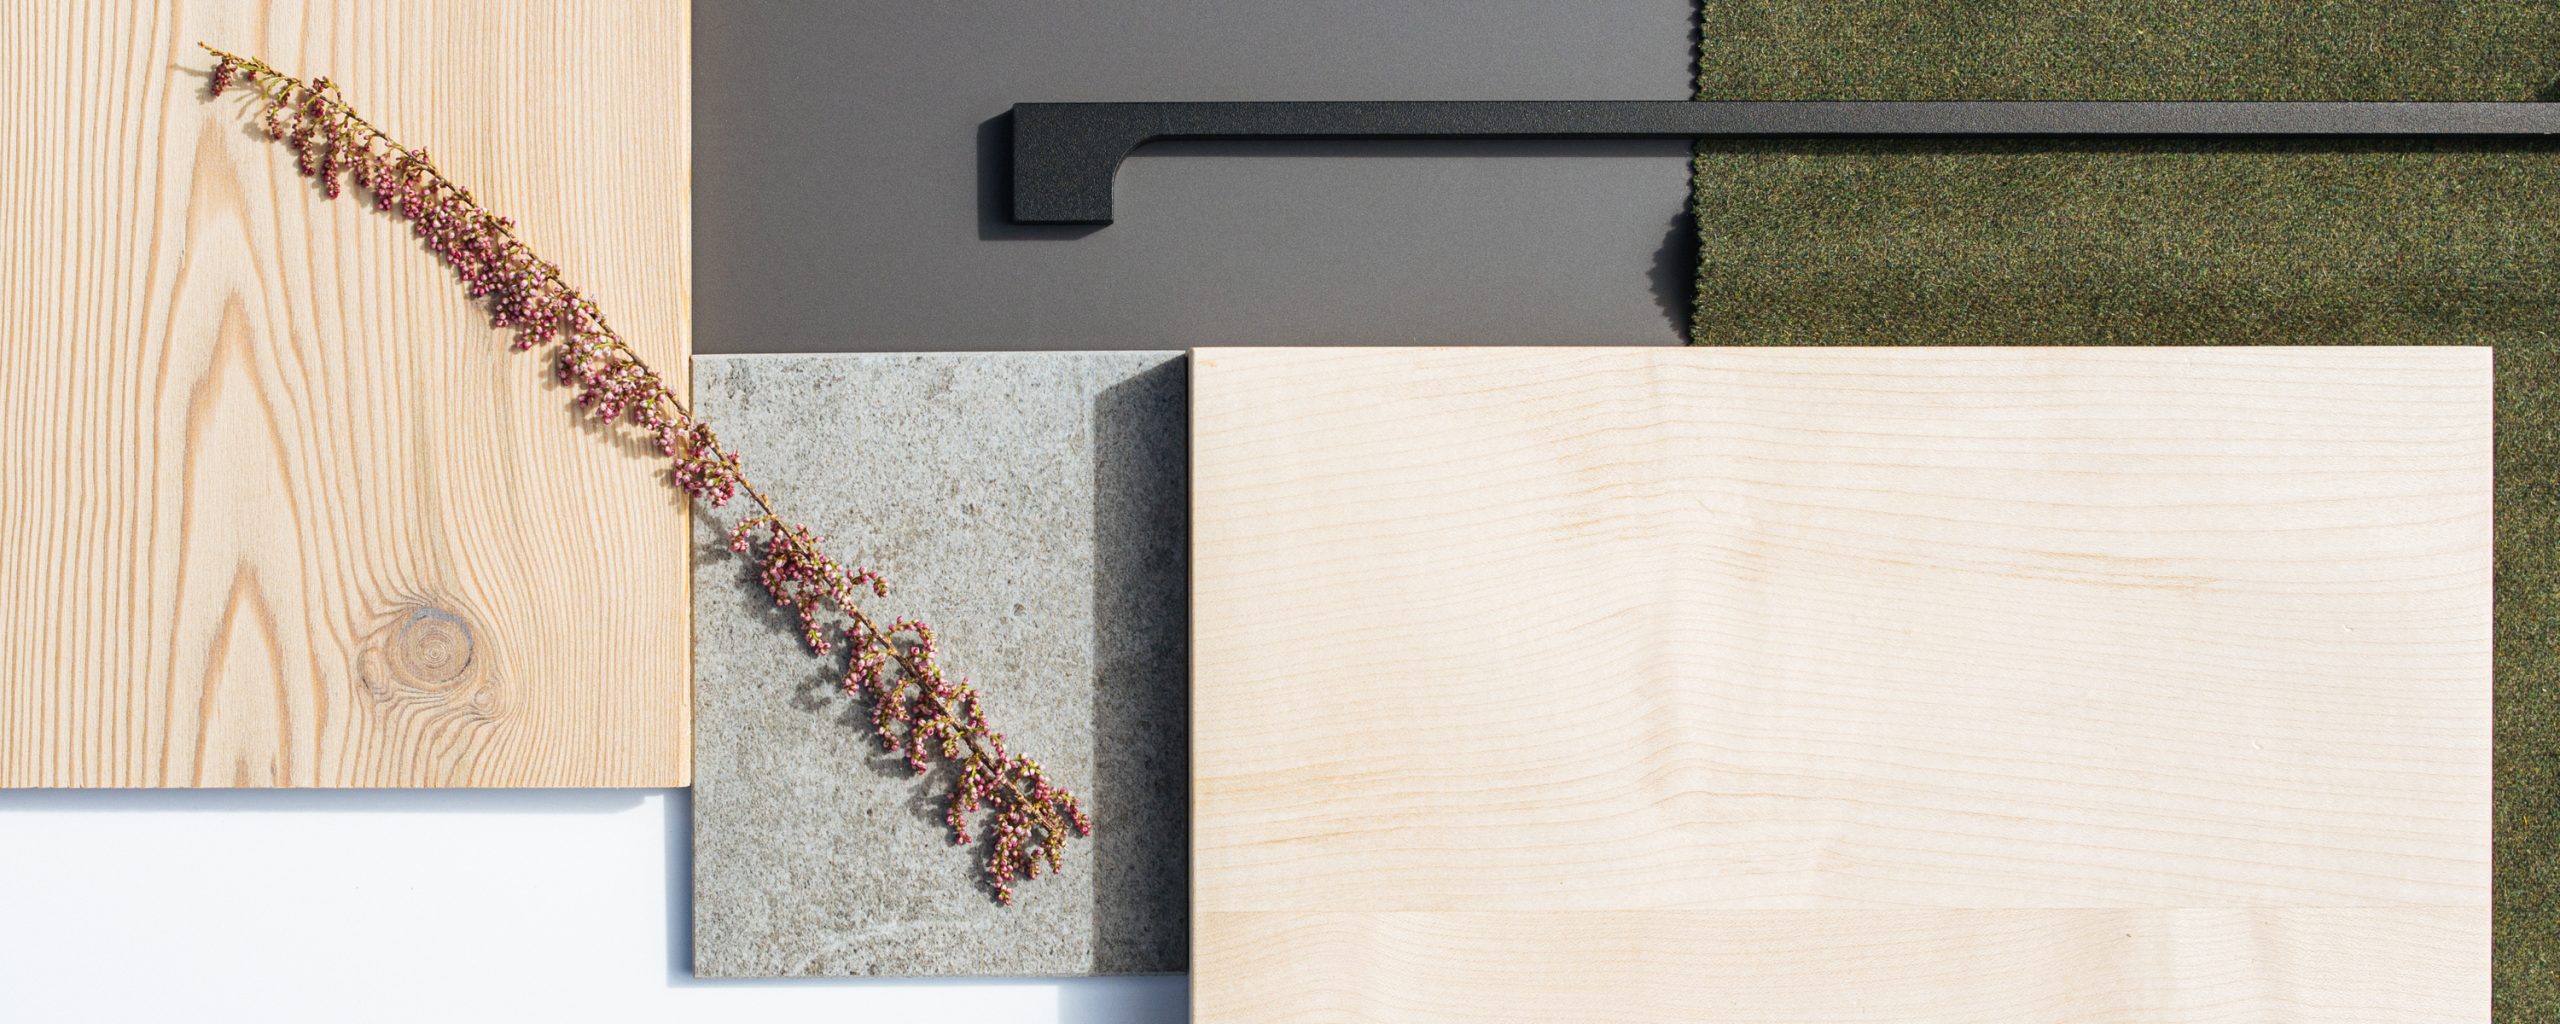 Ausgesuchte Materialien für die Innenarchitektur: Holzplatten, Steinplatten, schwarzer, schmaler Küchengriff, grünes Textil